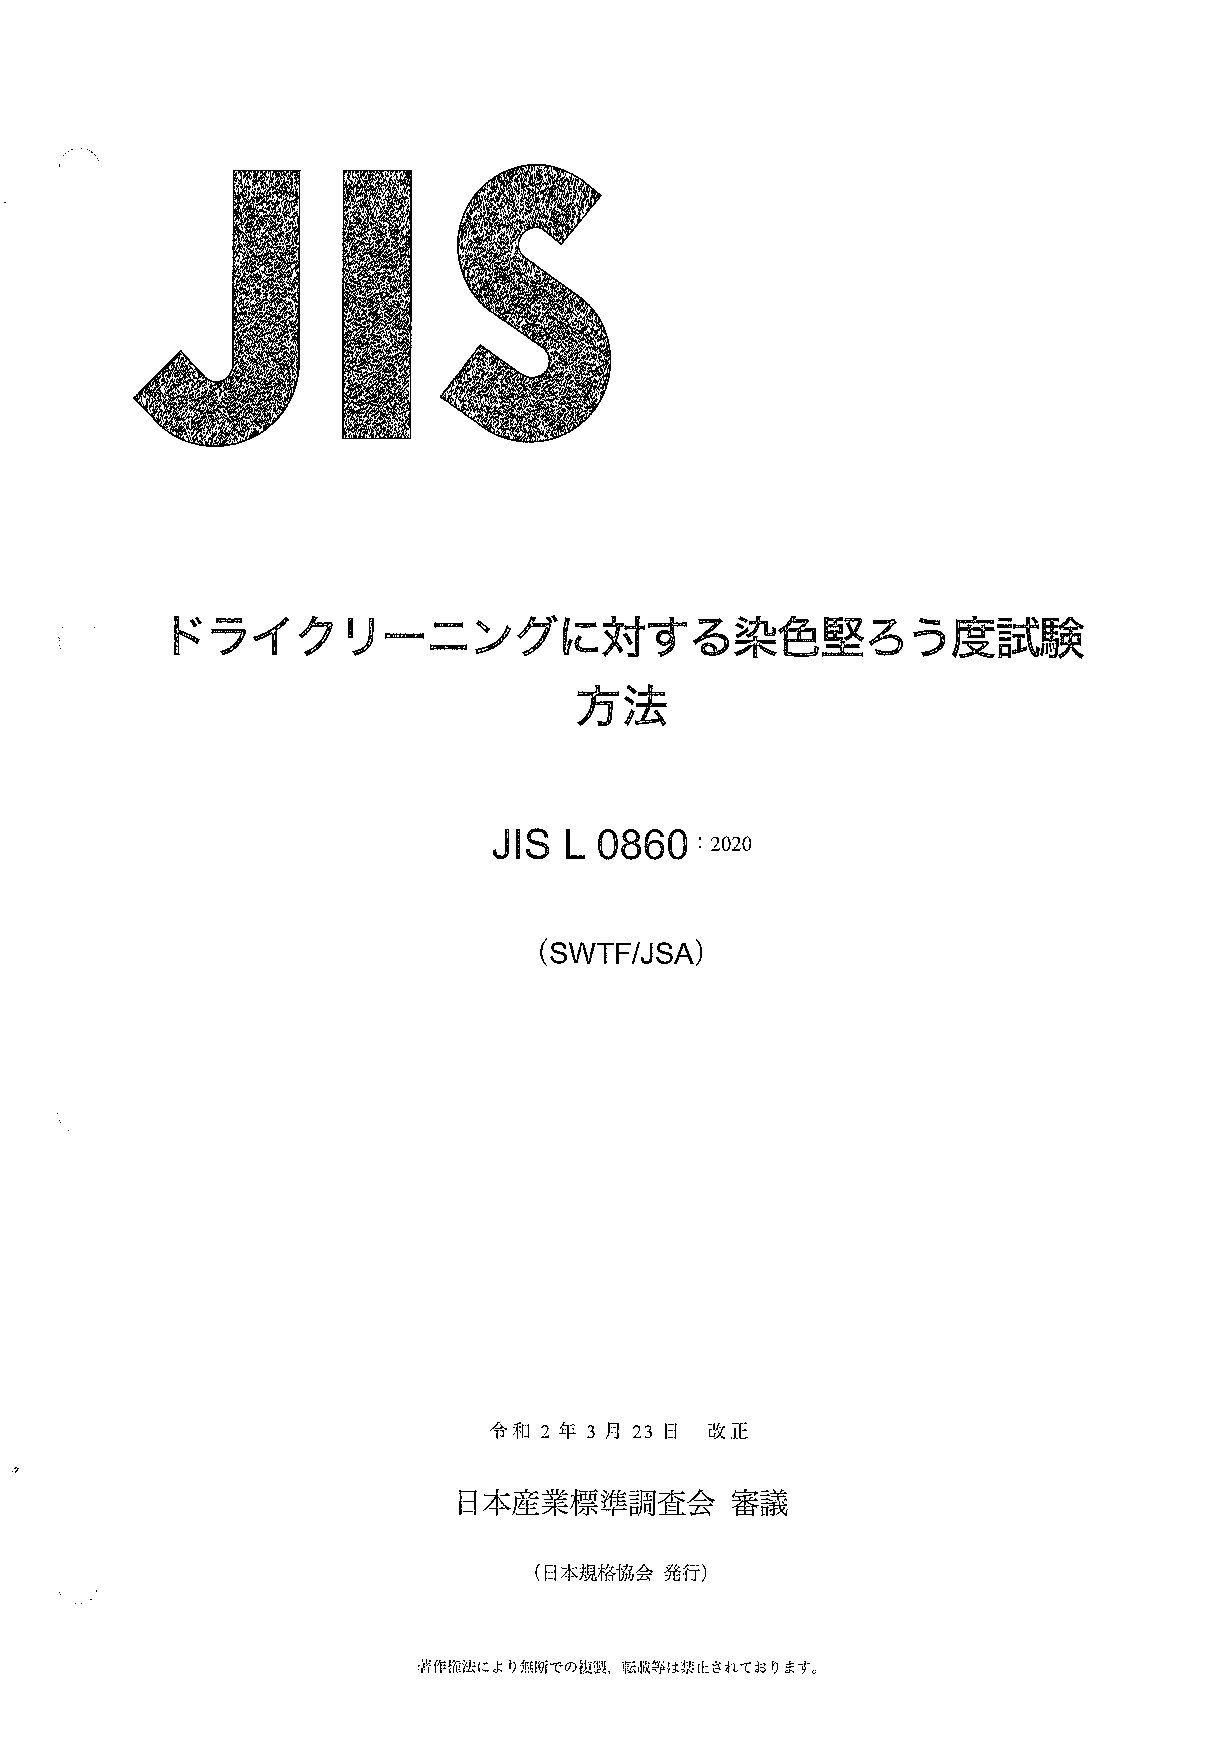 JIS L 0860:2020封面图